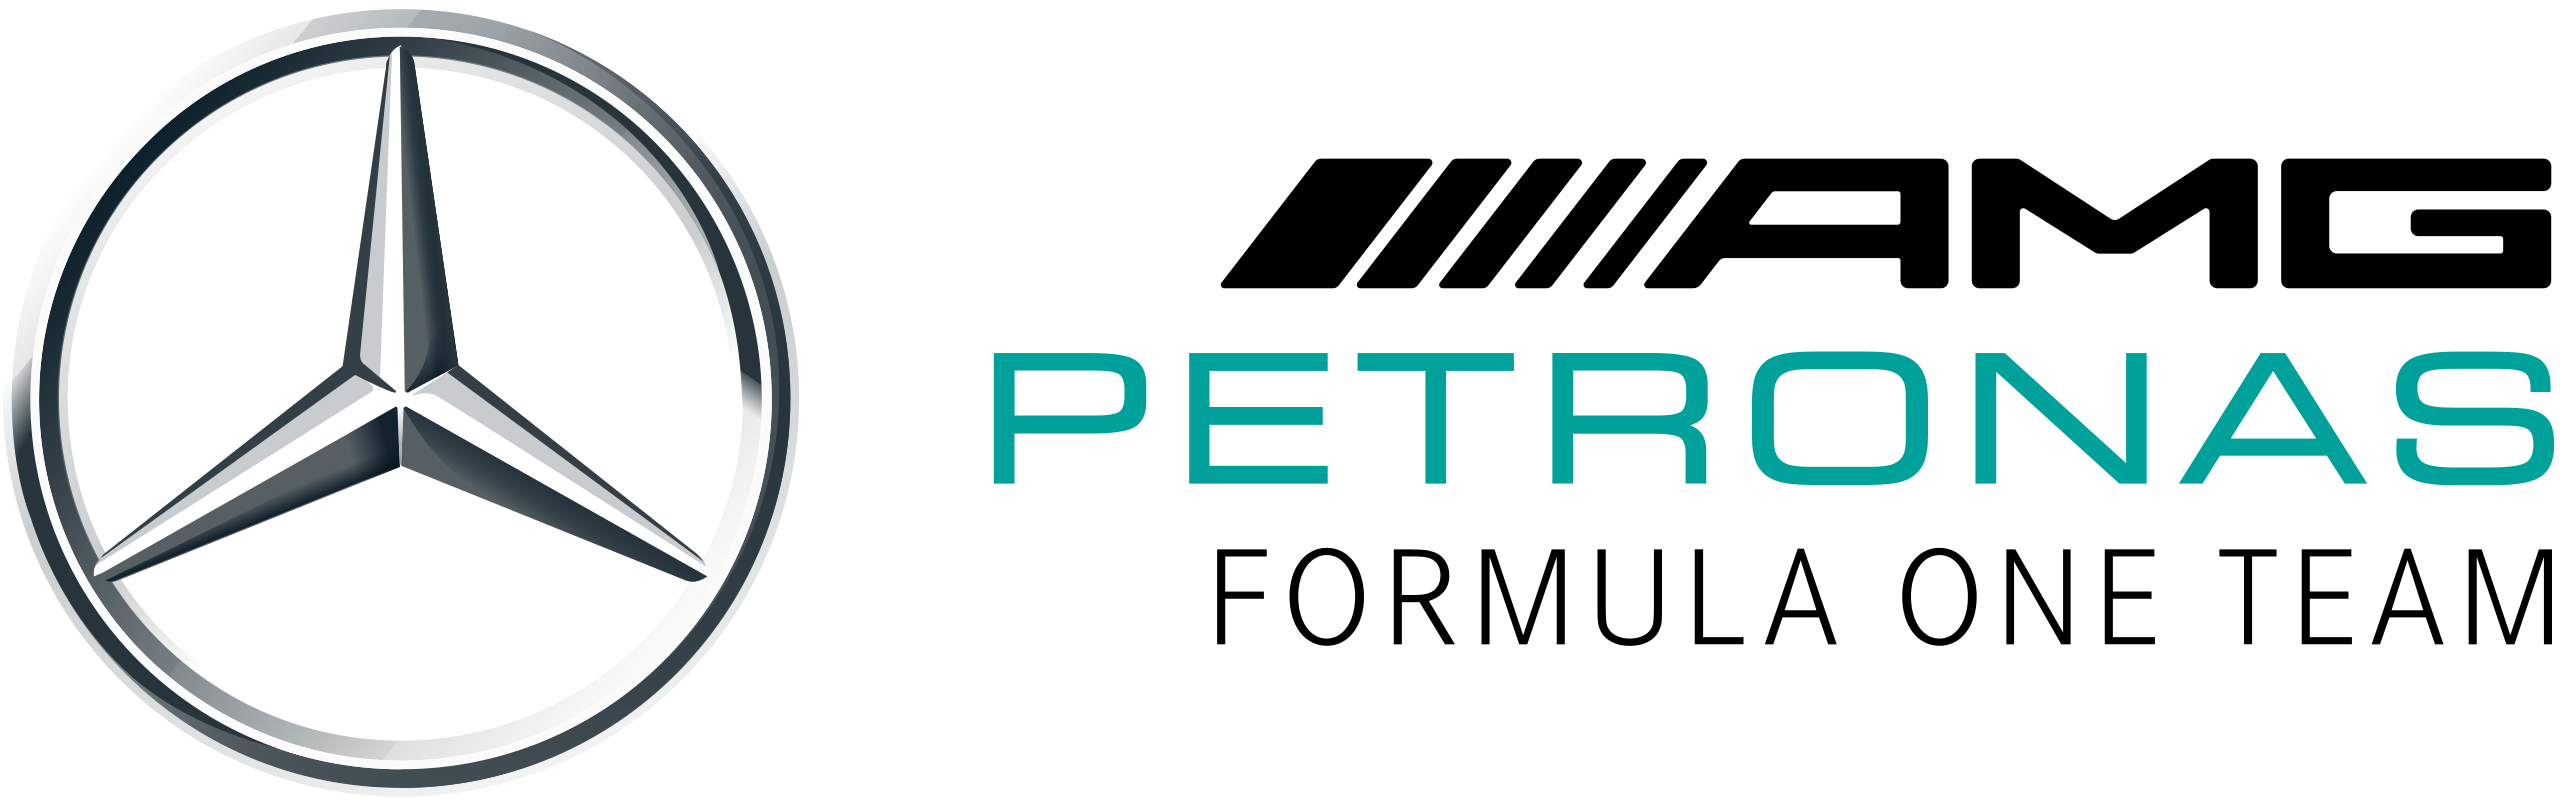 Mercedes AMG Petronas F1 logo